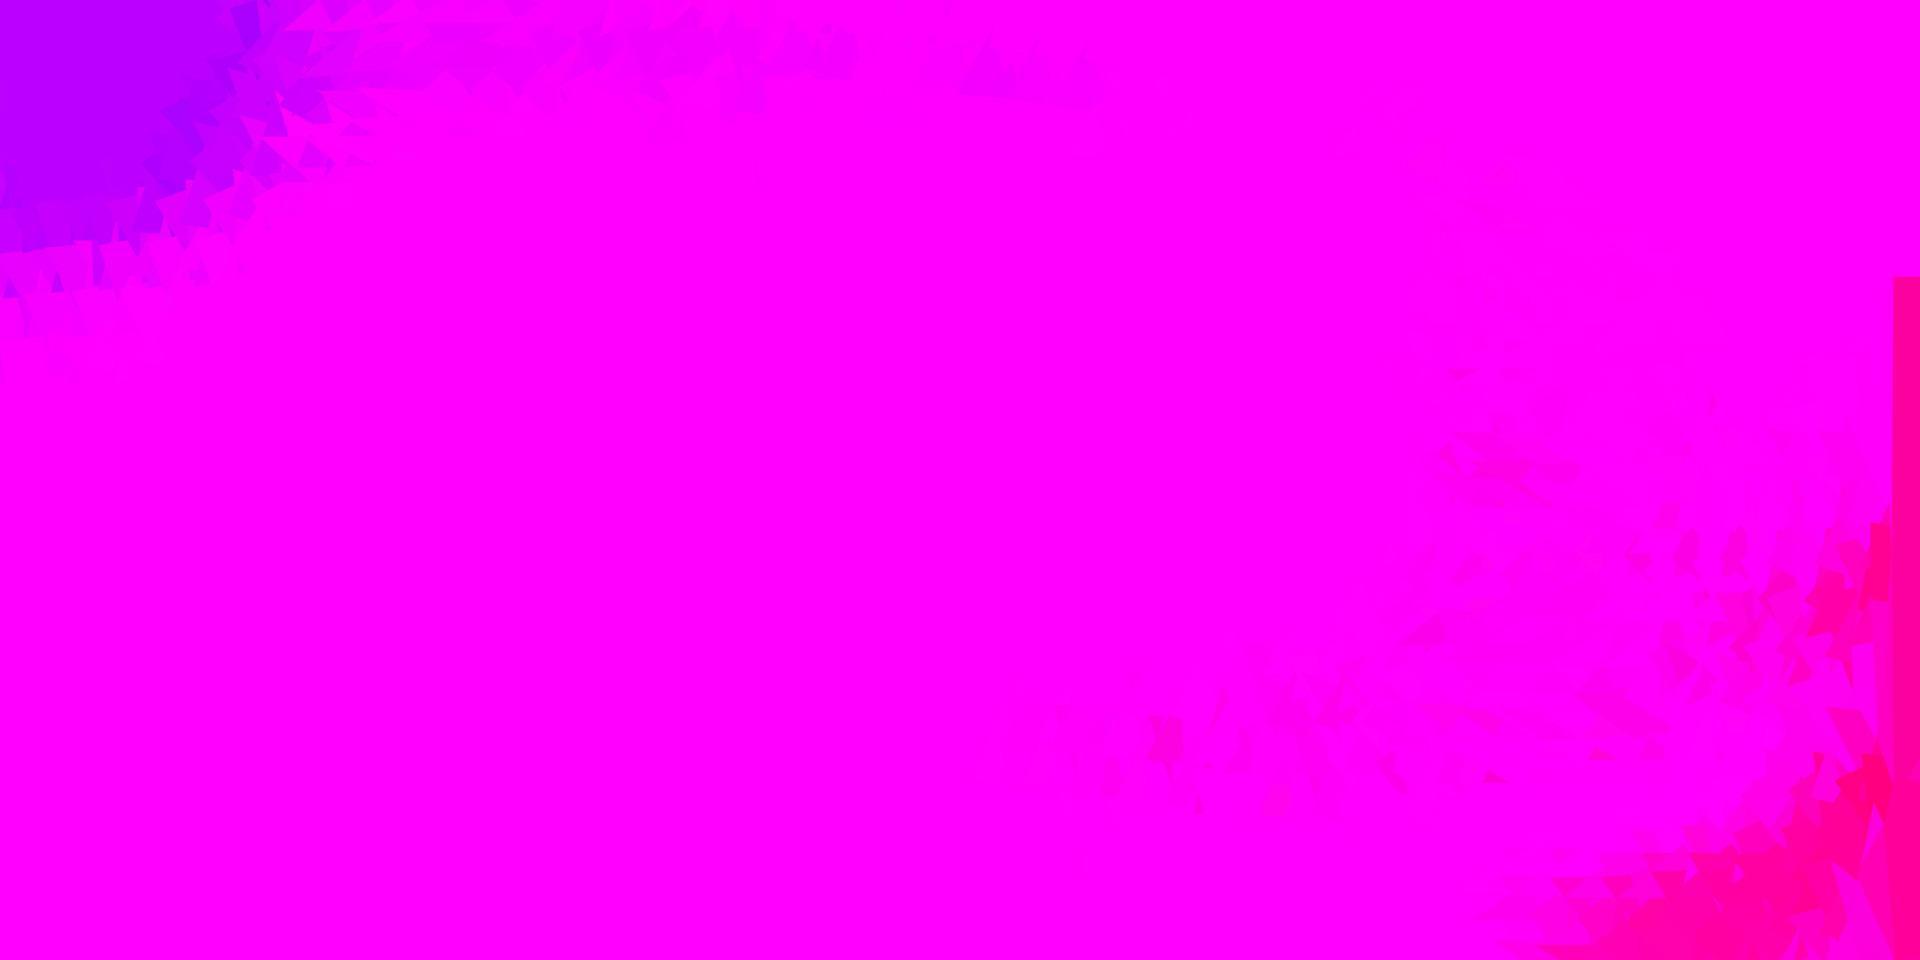 Fondo de triángulo abstracto de vector púrpura, rosa claro.